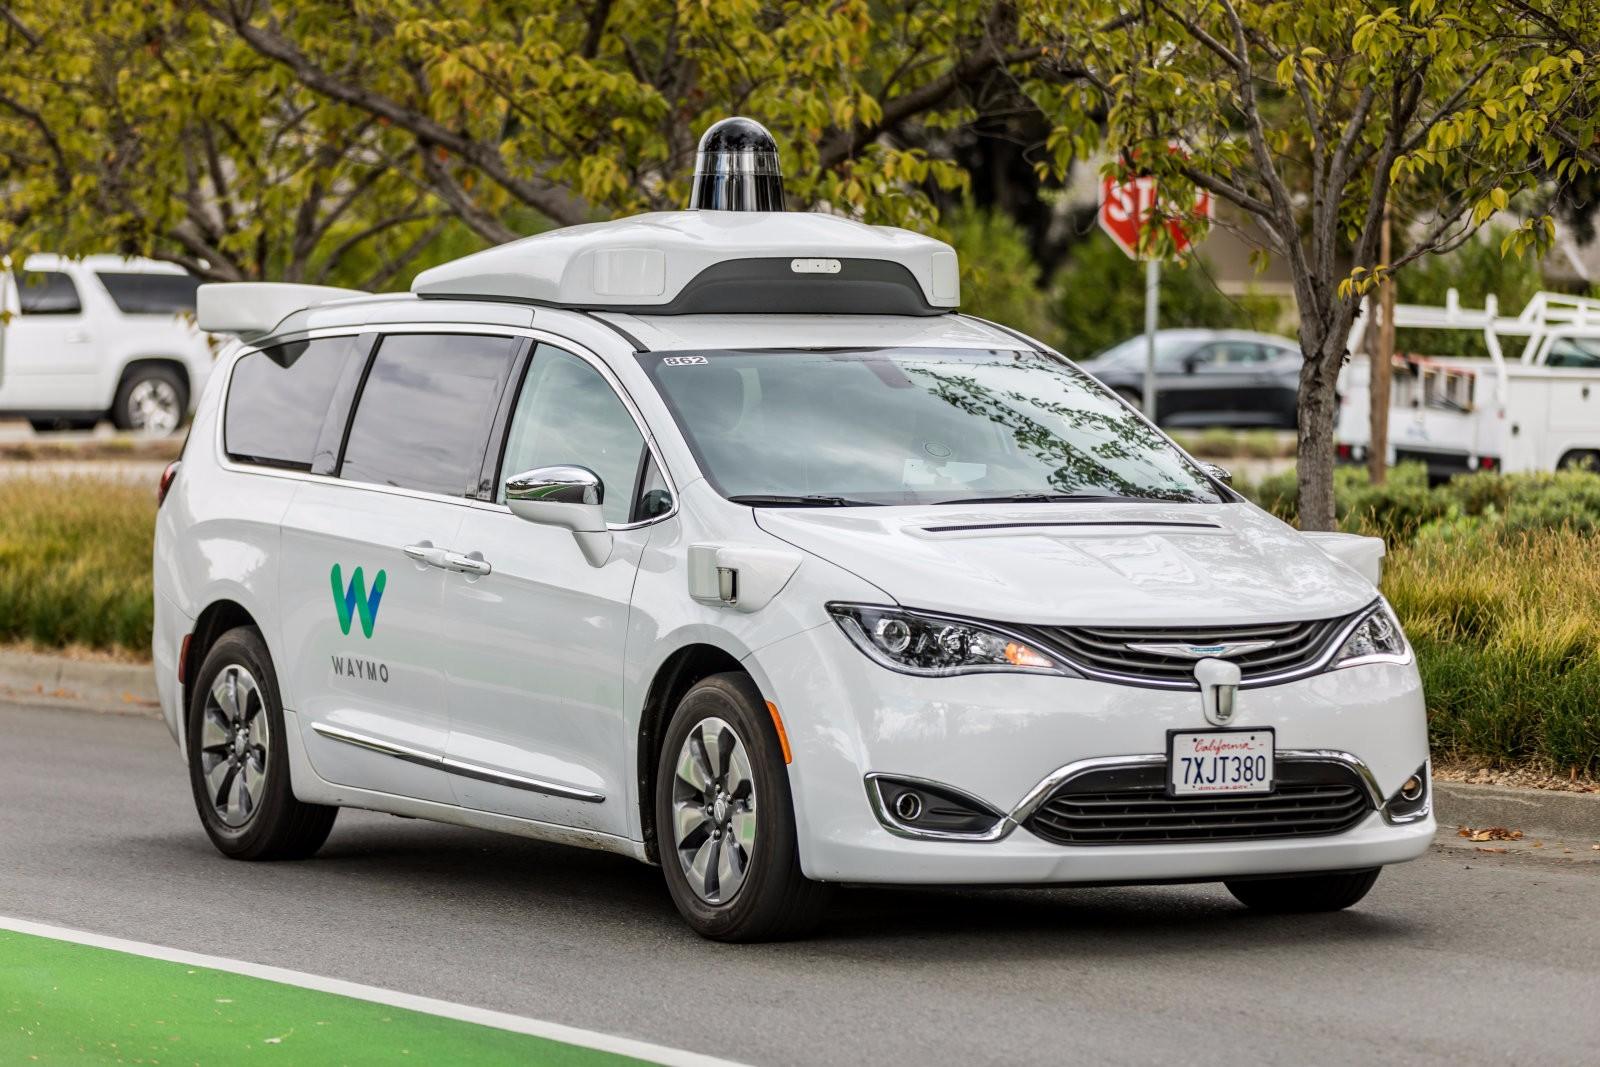 加州将允许自动驾驶汽车接载乘客